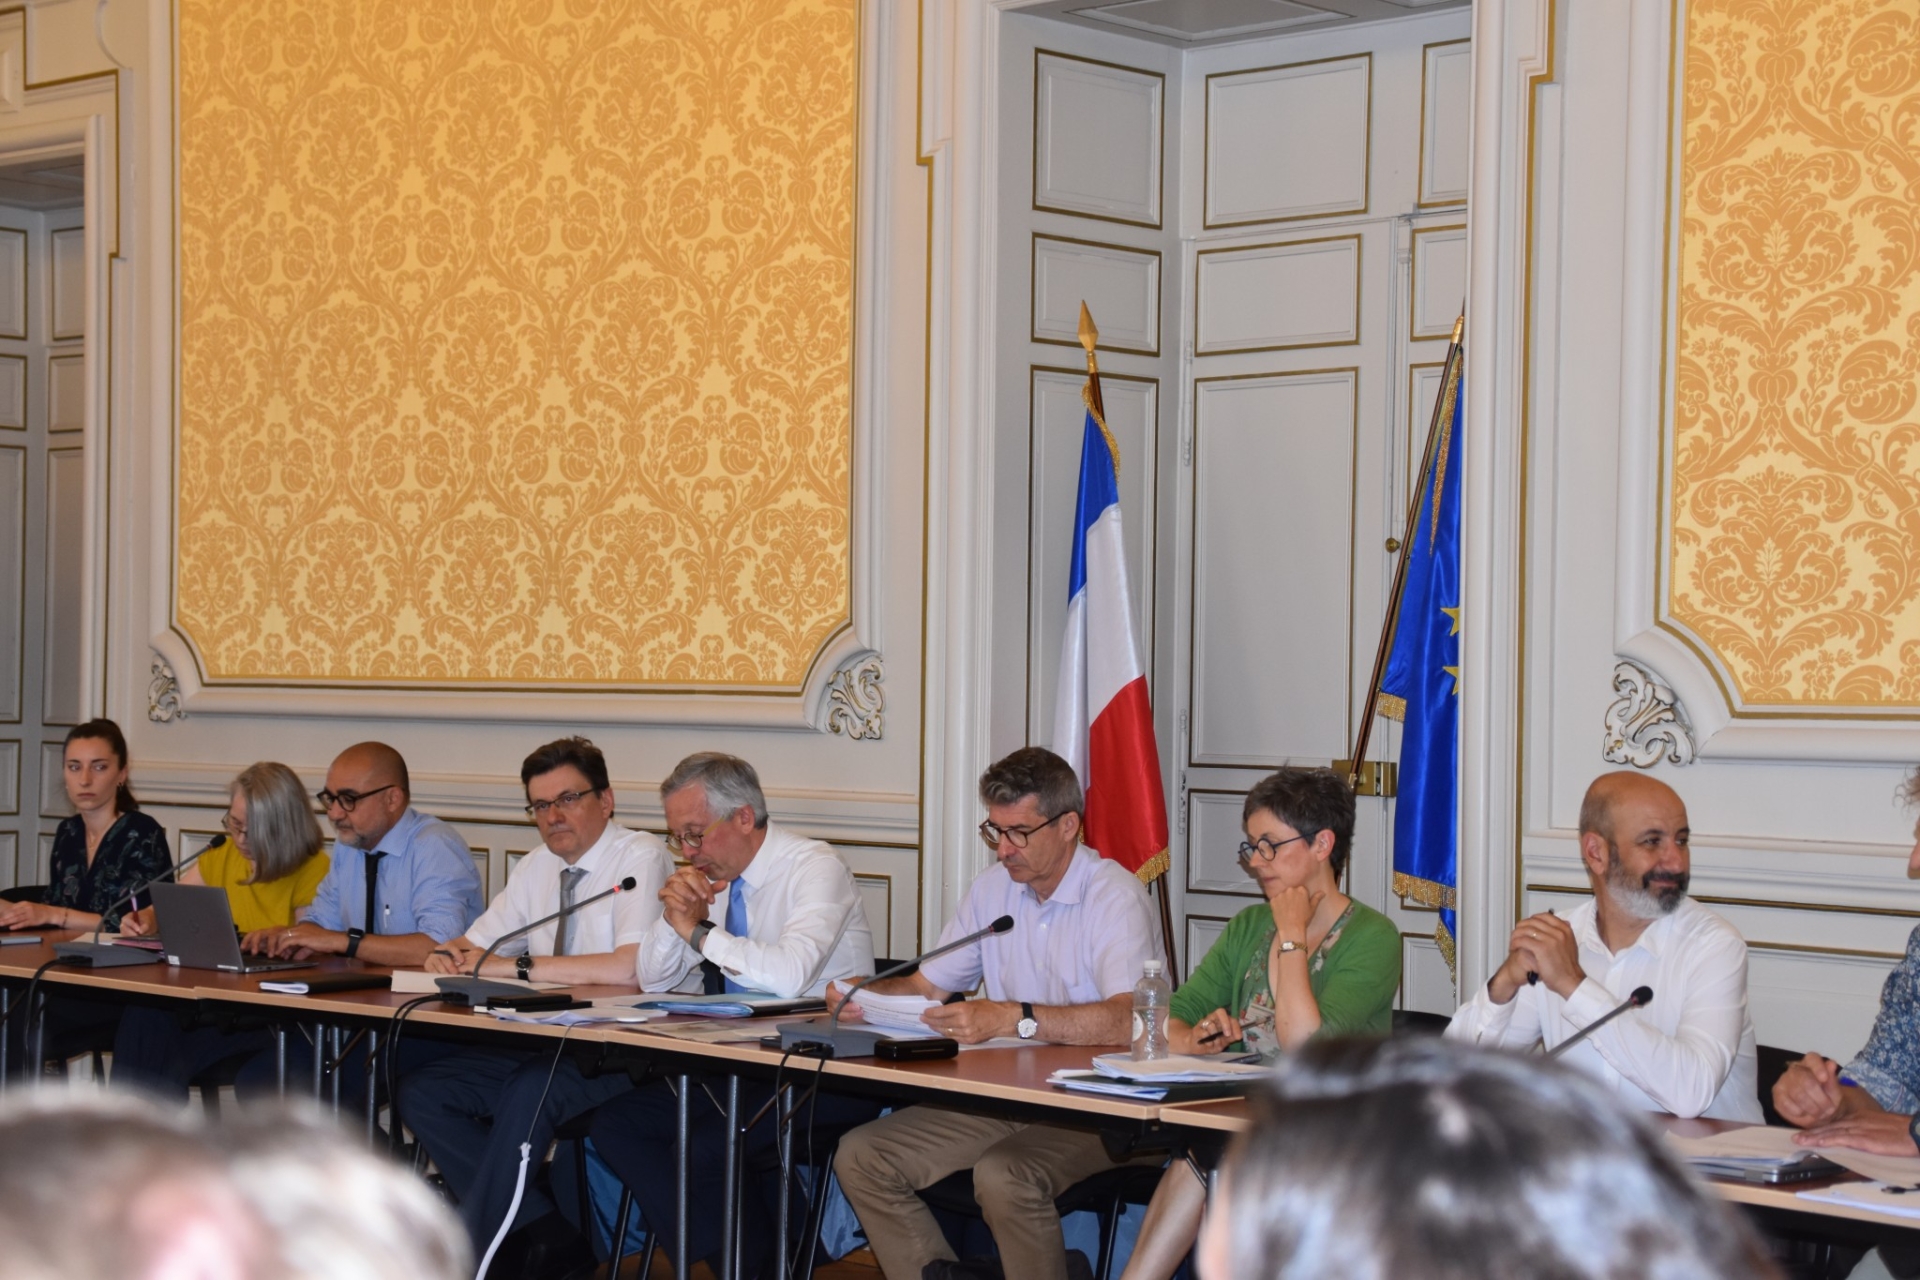 Le Comité départemental des énergies renouvelables, présidé par le préfet de Saône-et-Loire, Yves Séguy, au centre, accompagné du directeur départemental des territoires, Jean-Pierre Goron, à sa droite.